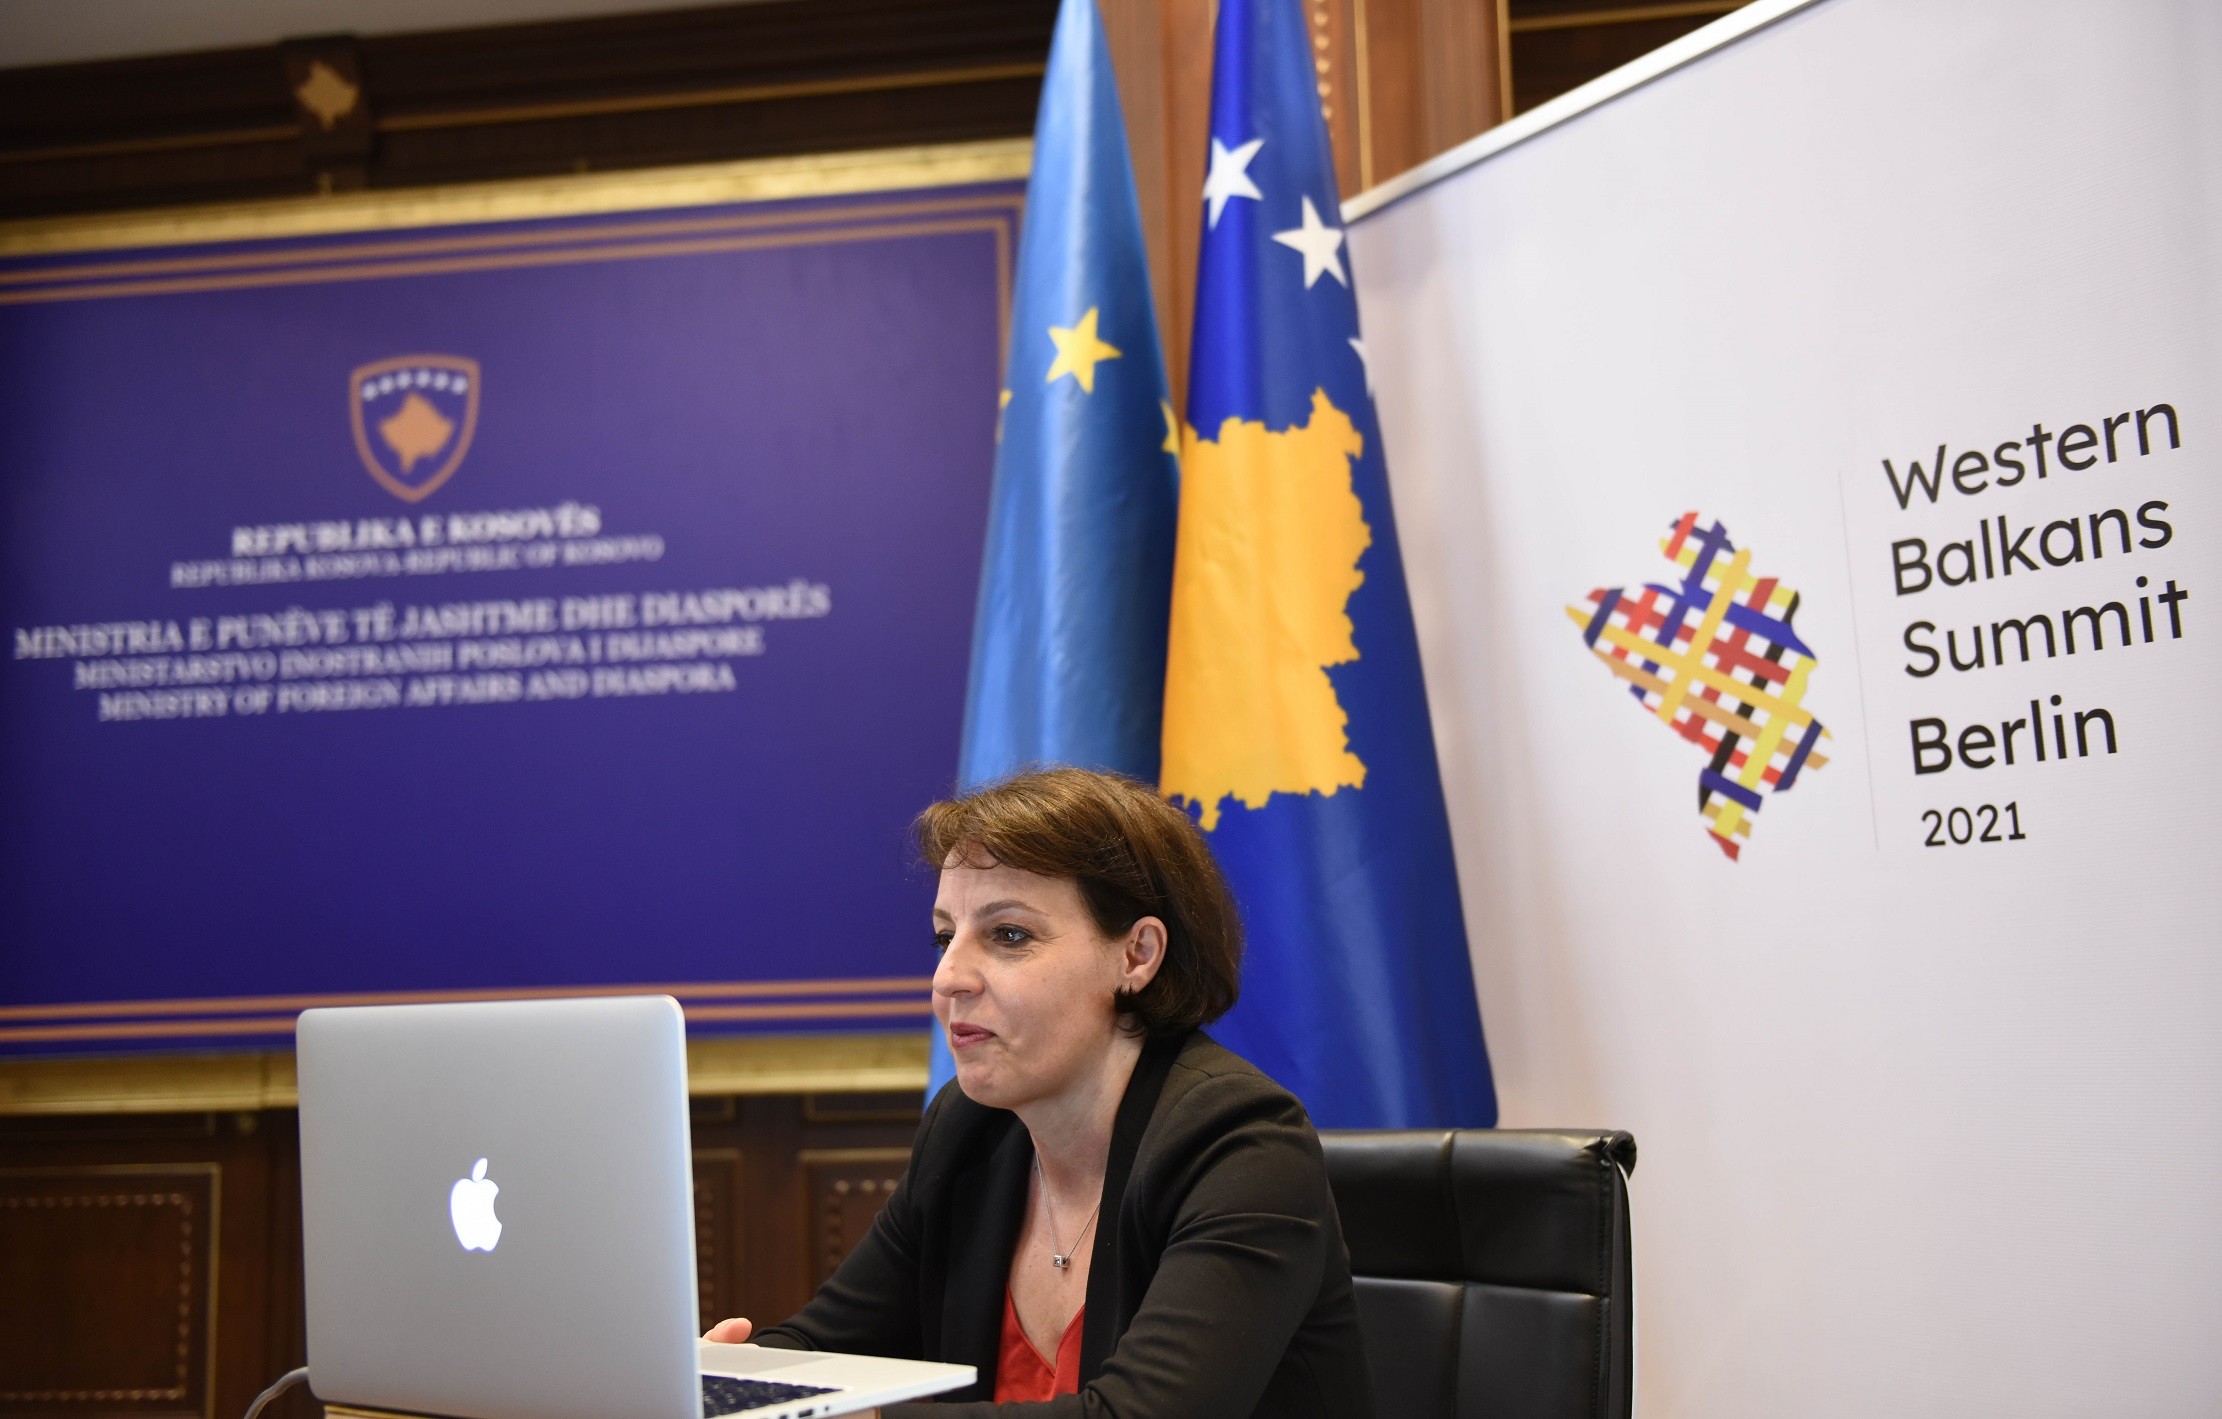 Gërvalla i përmend Serbisë miliarda dëme qe ende si ka kompensuar